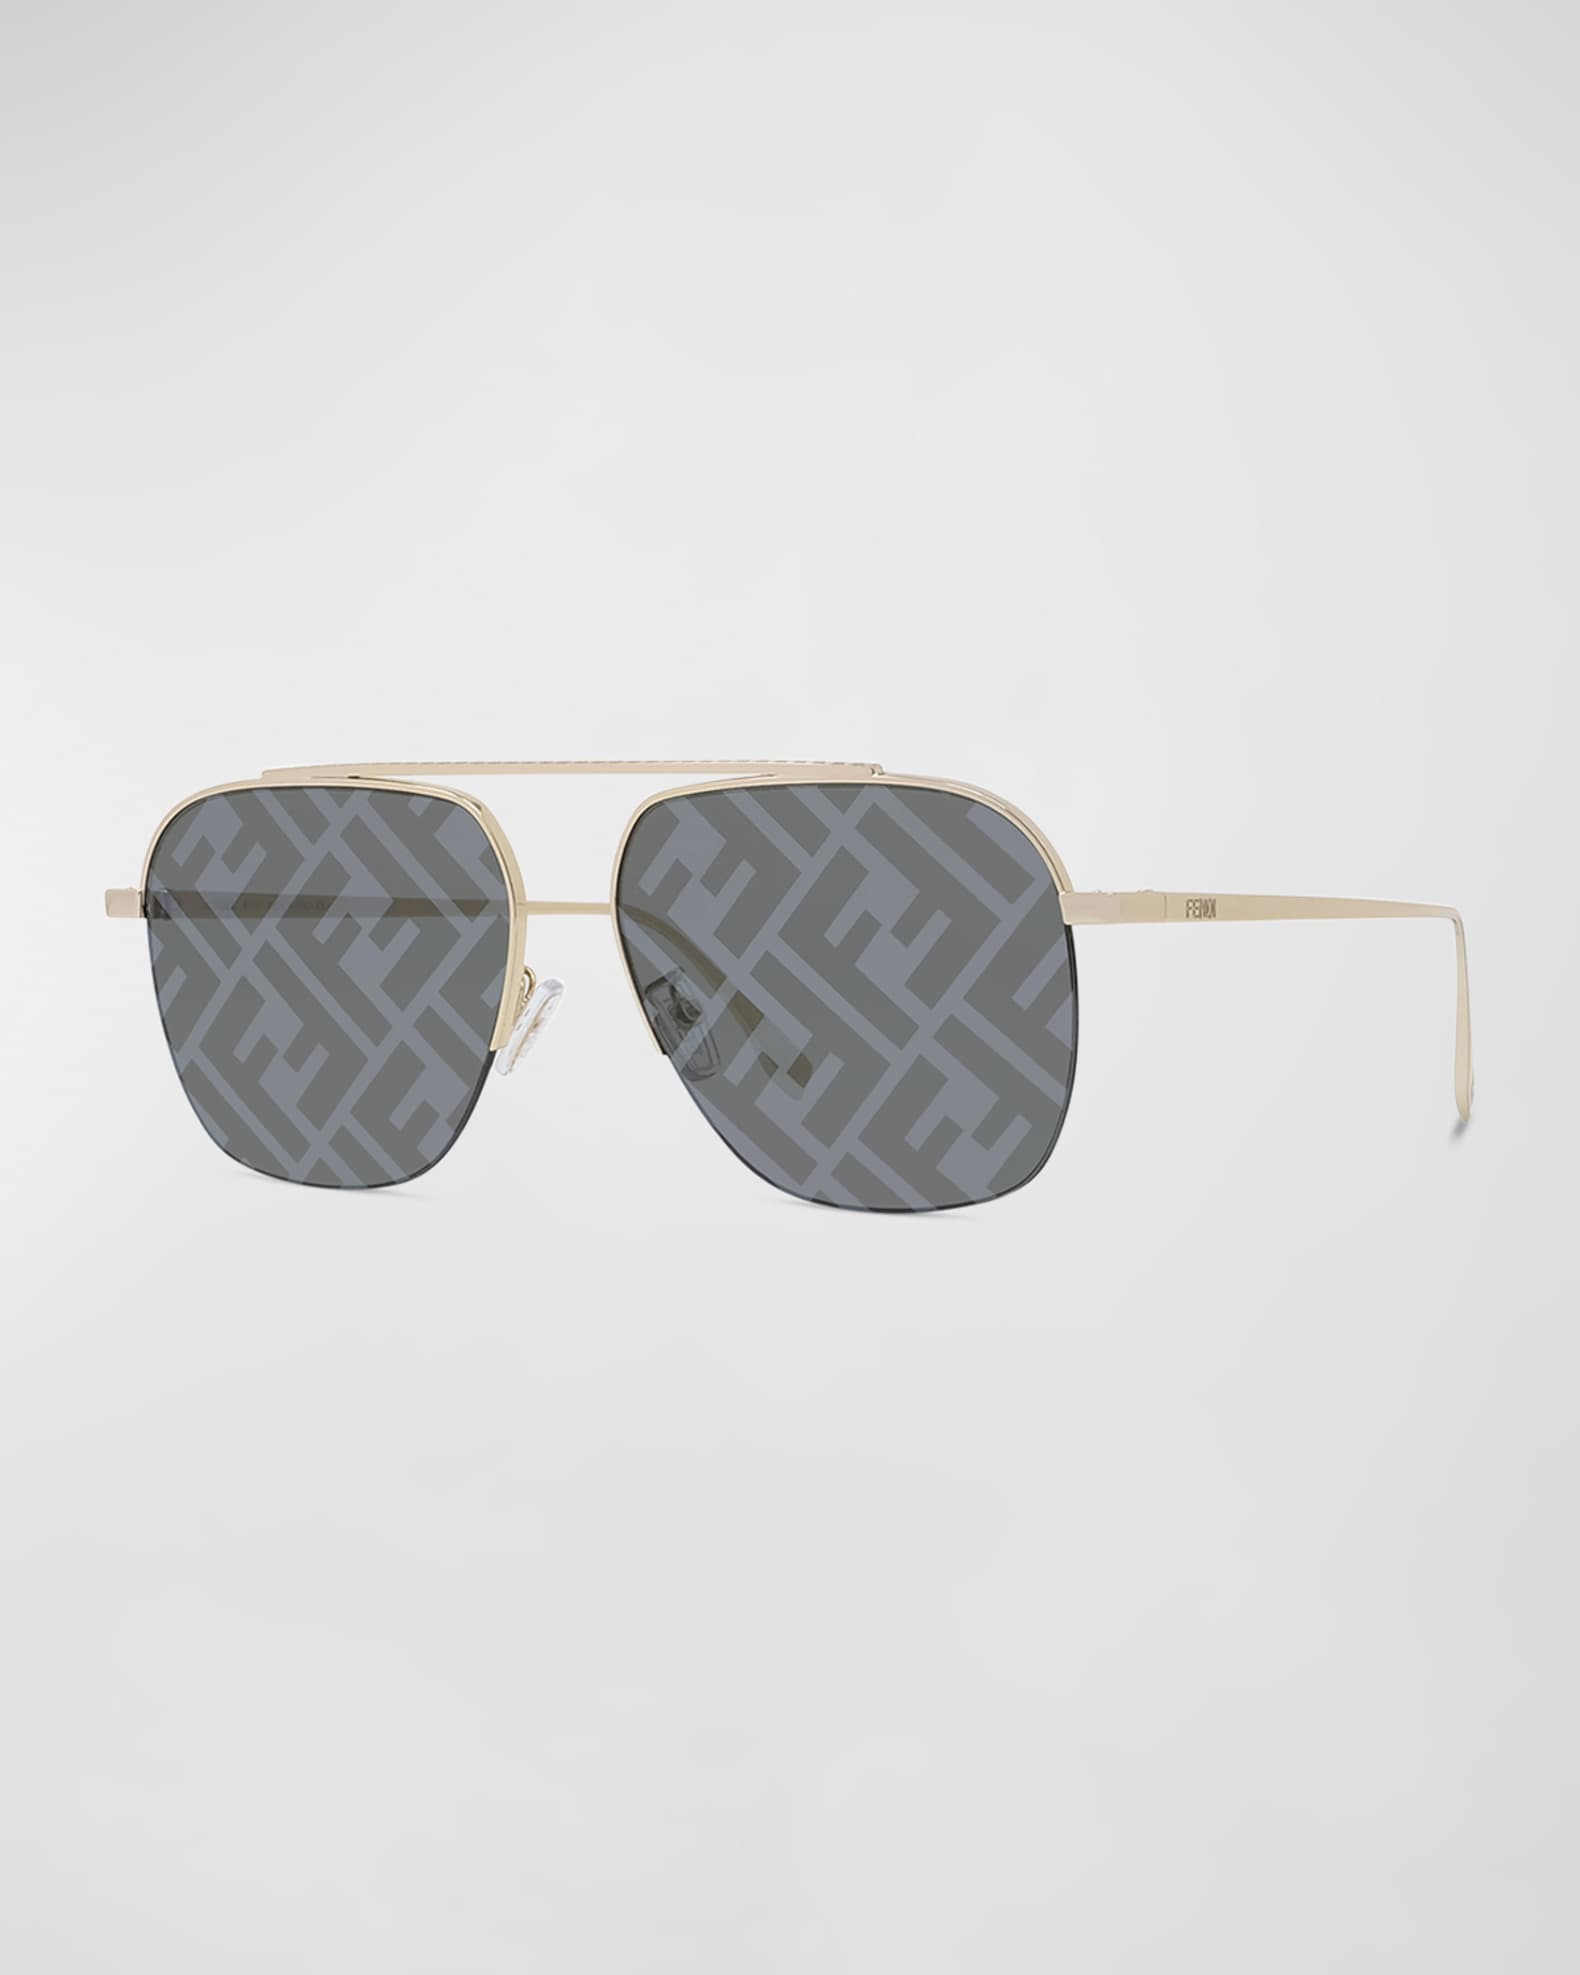 LOUIS VUITTON LV First Square Sunglasses Black Acetate & Canvas. Size E